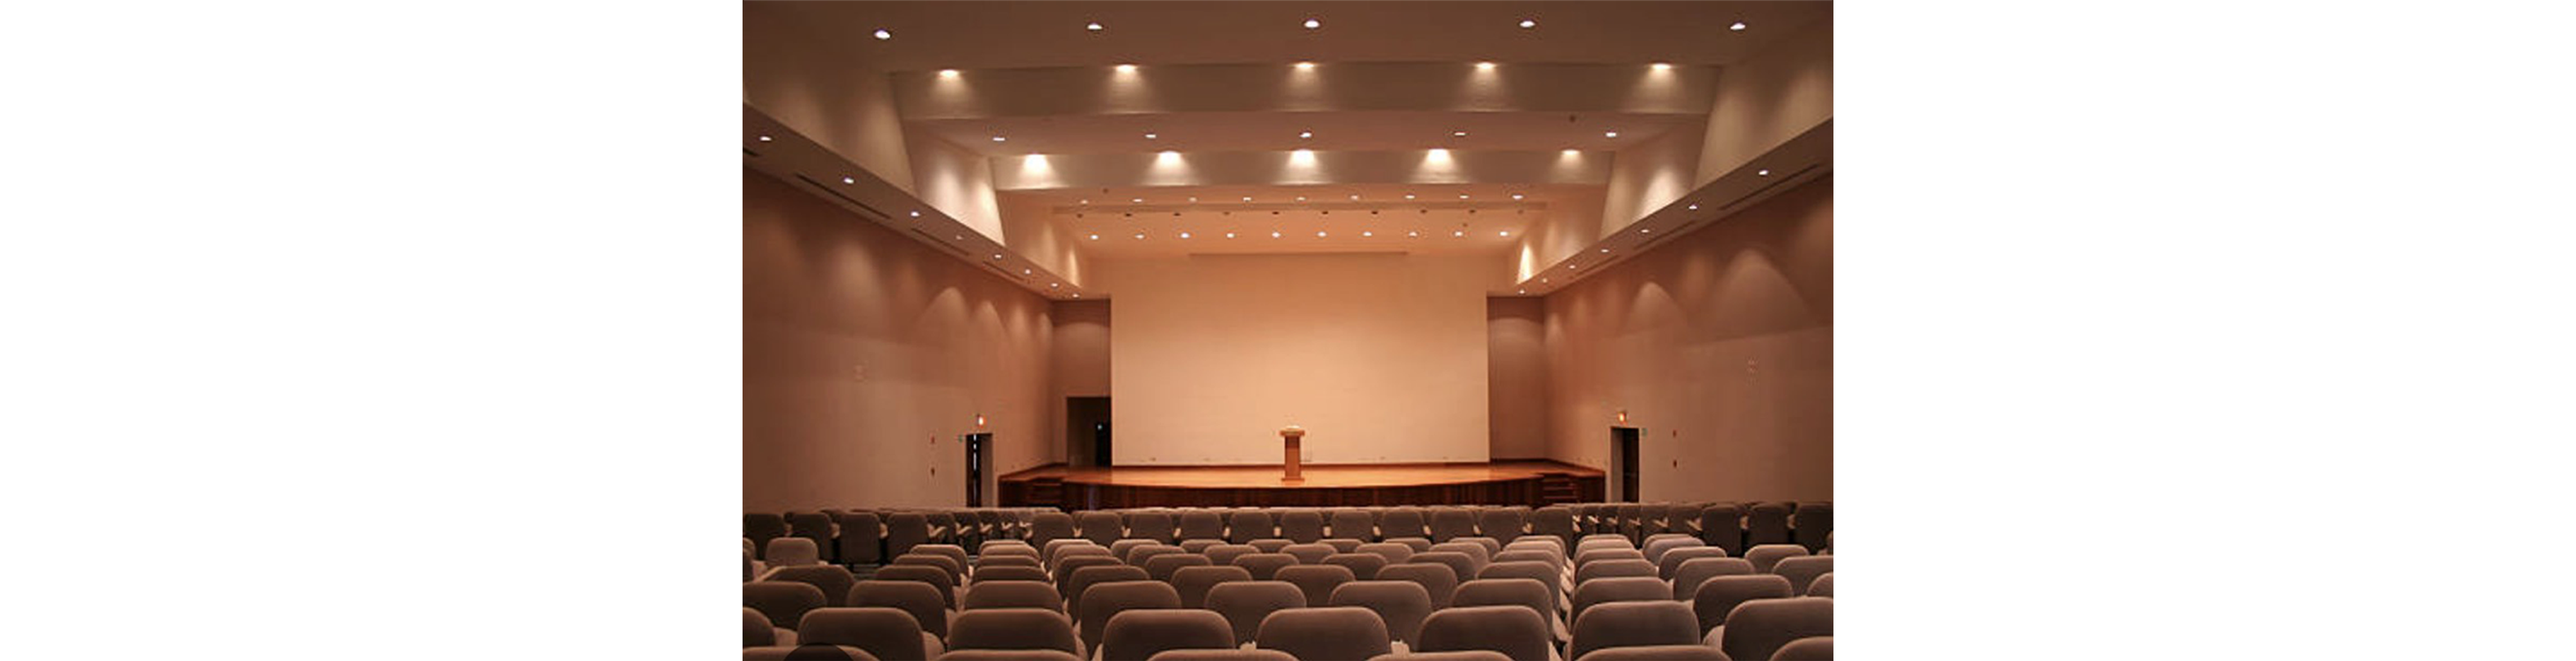 The Auditorium